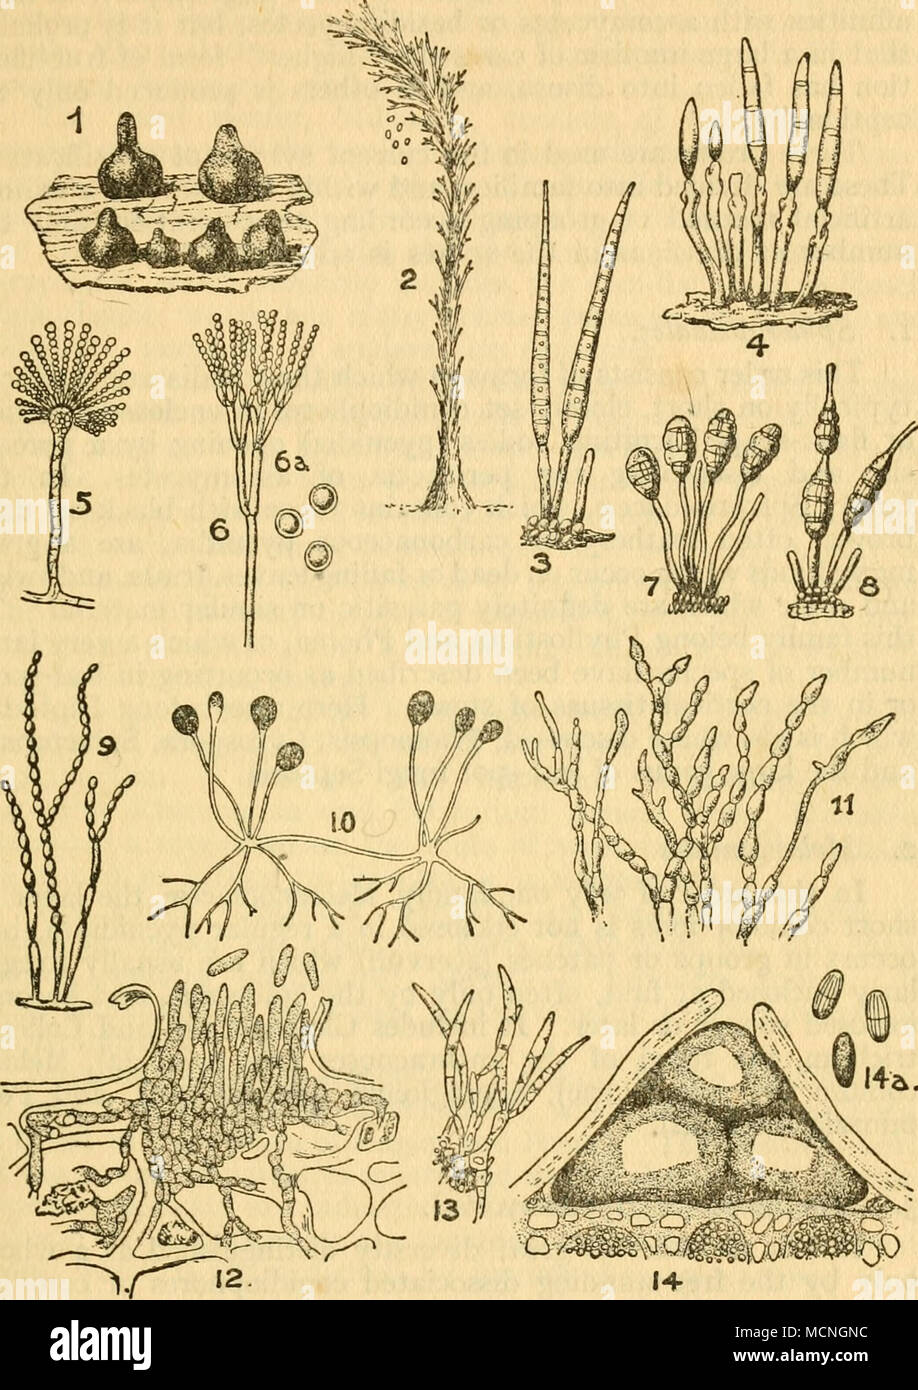 . Fig. 10 TYPES OF CONIDIAL FRUCTIFICATIONS 1. Sphaeropsis. 2. Graphium (conid. stage of Rosellinia). 3. 4. Cercospora. 5. Aspergillus. 6. Penicillium. '. Macrosporium. 8. Alternaria tenuis. 9. Oospora. 10. MucoR (Zygomycetes). 11. Monilia. 12. GlOEOSPORIUM LINDEMUTHIANUM. 13. FUSARIUM. 14. DiPLODIA. After Nat. Pflam. Stock Photo